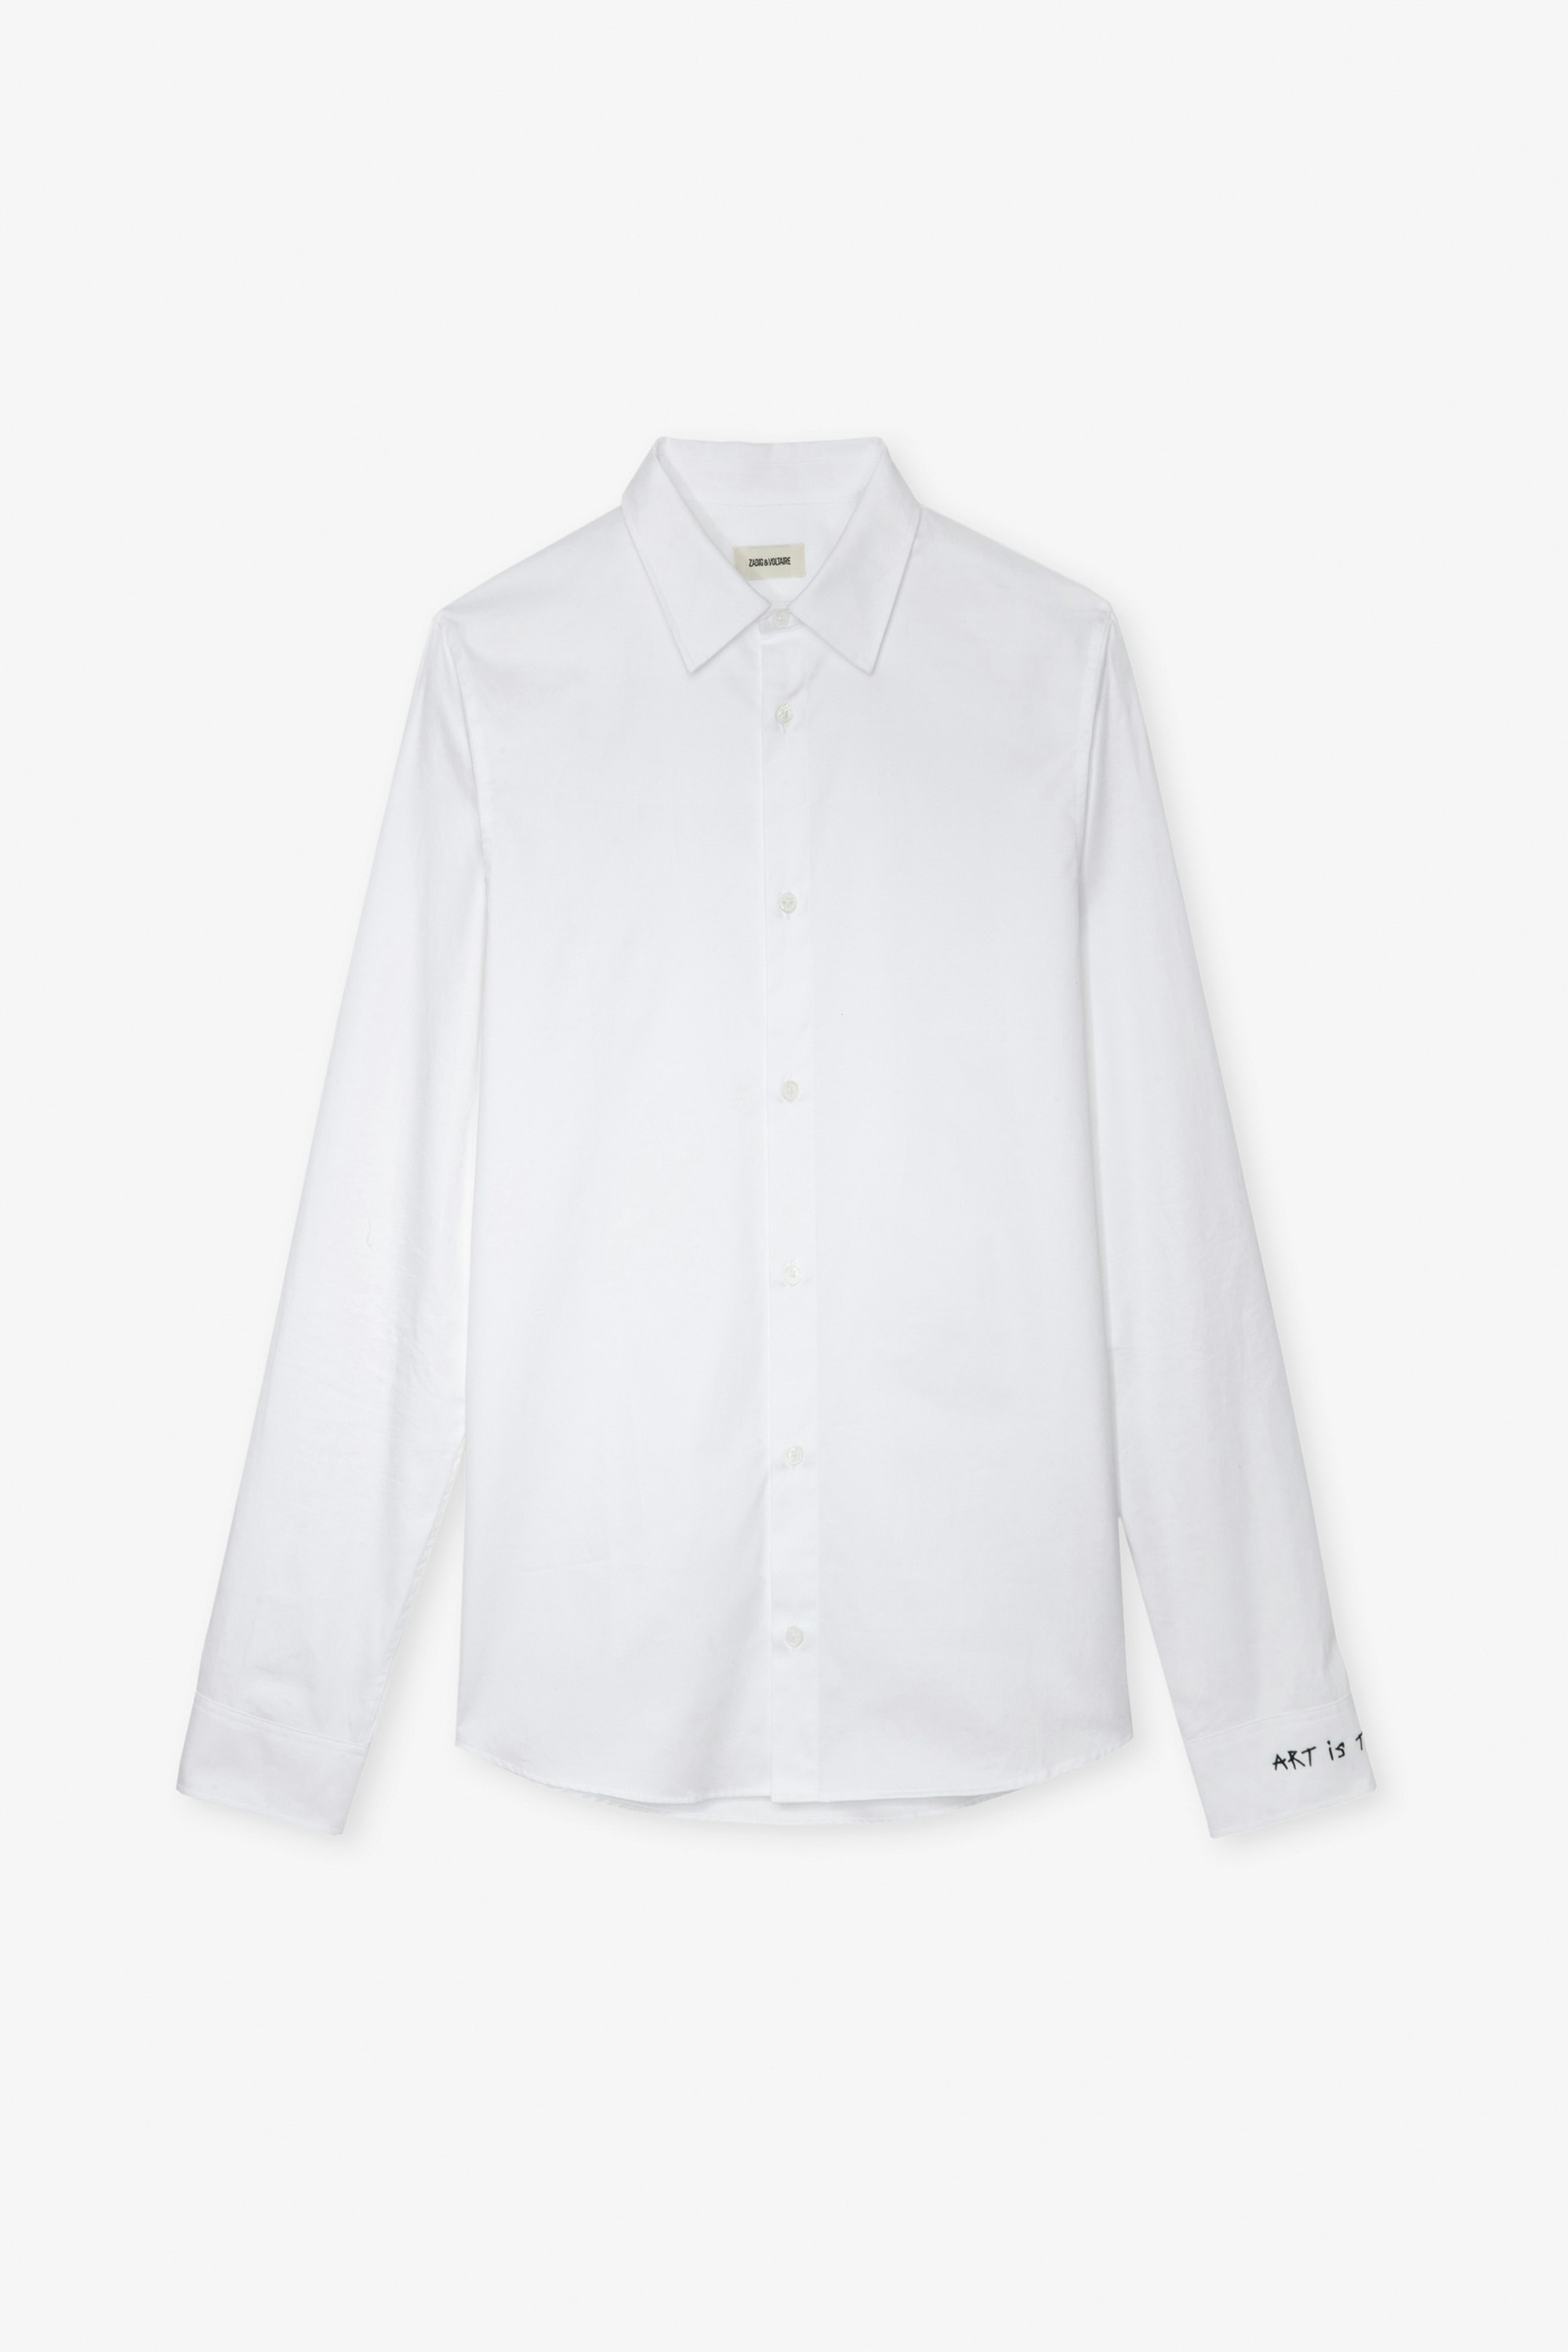 Camisa Sydney - Camisa unisex de algodón en color blanco con bordado «Art Is Truth» en el puño derecho.